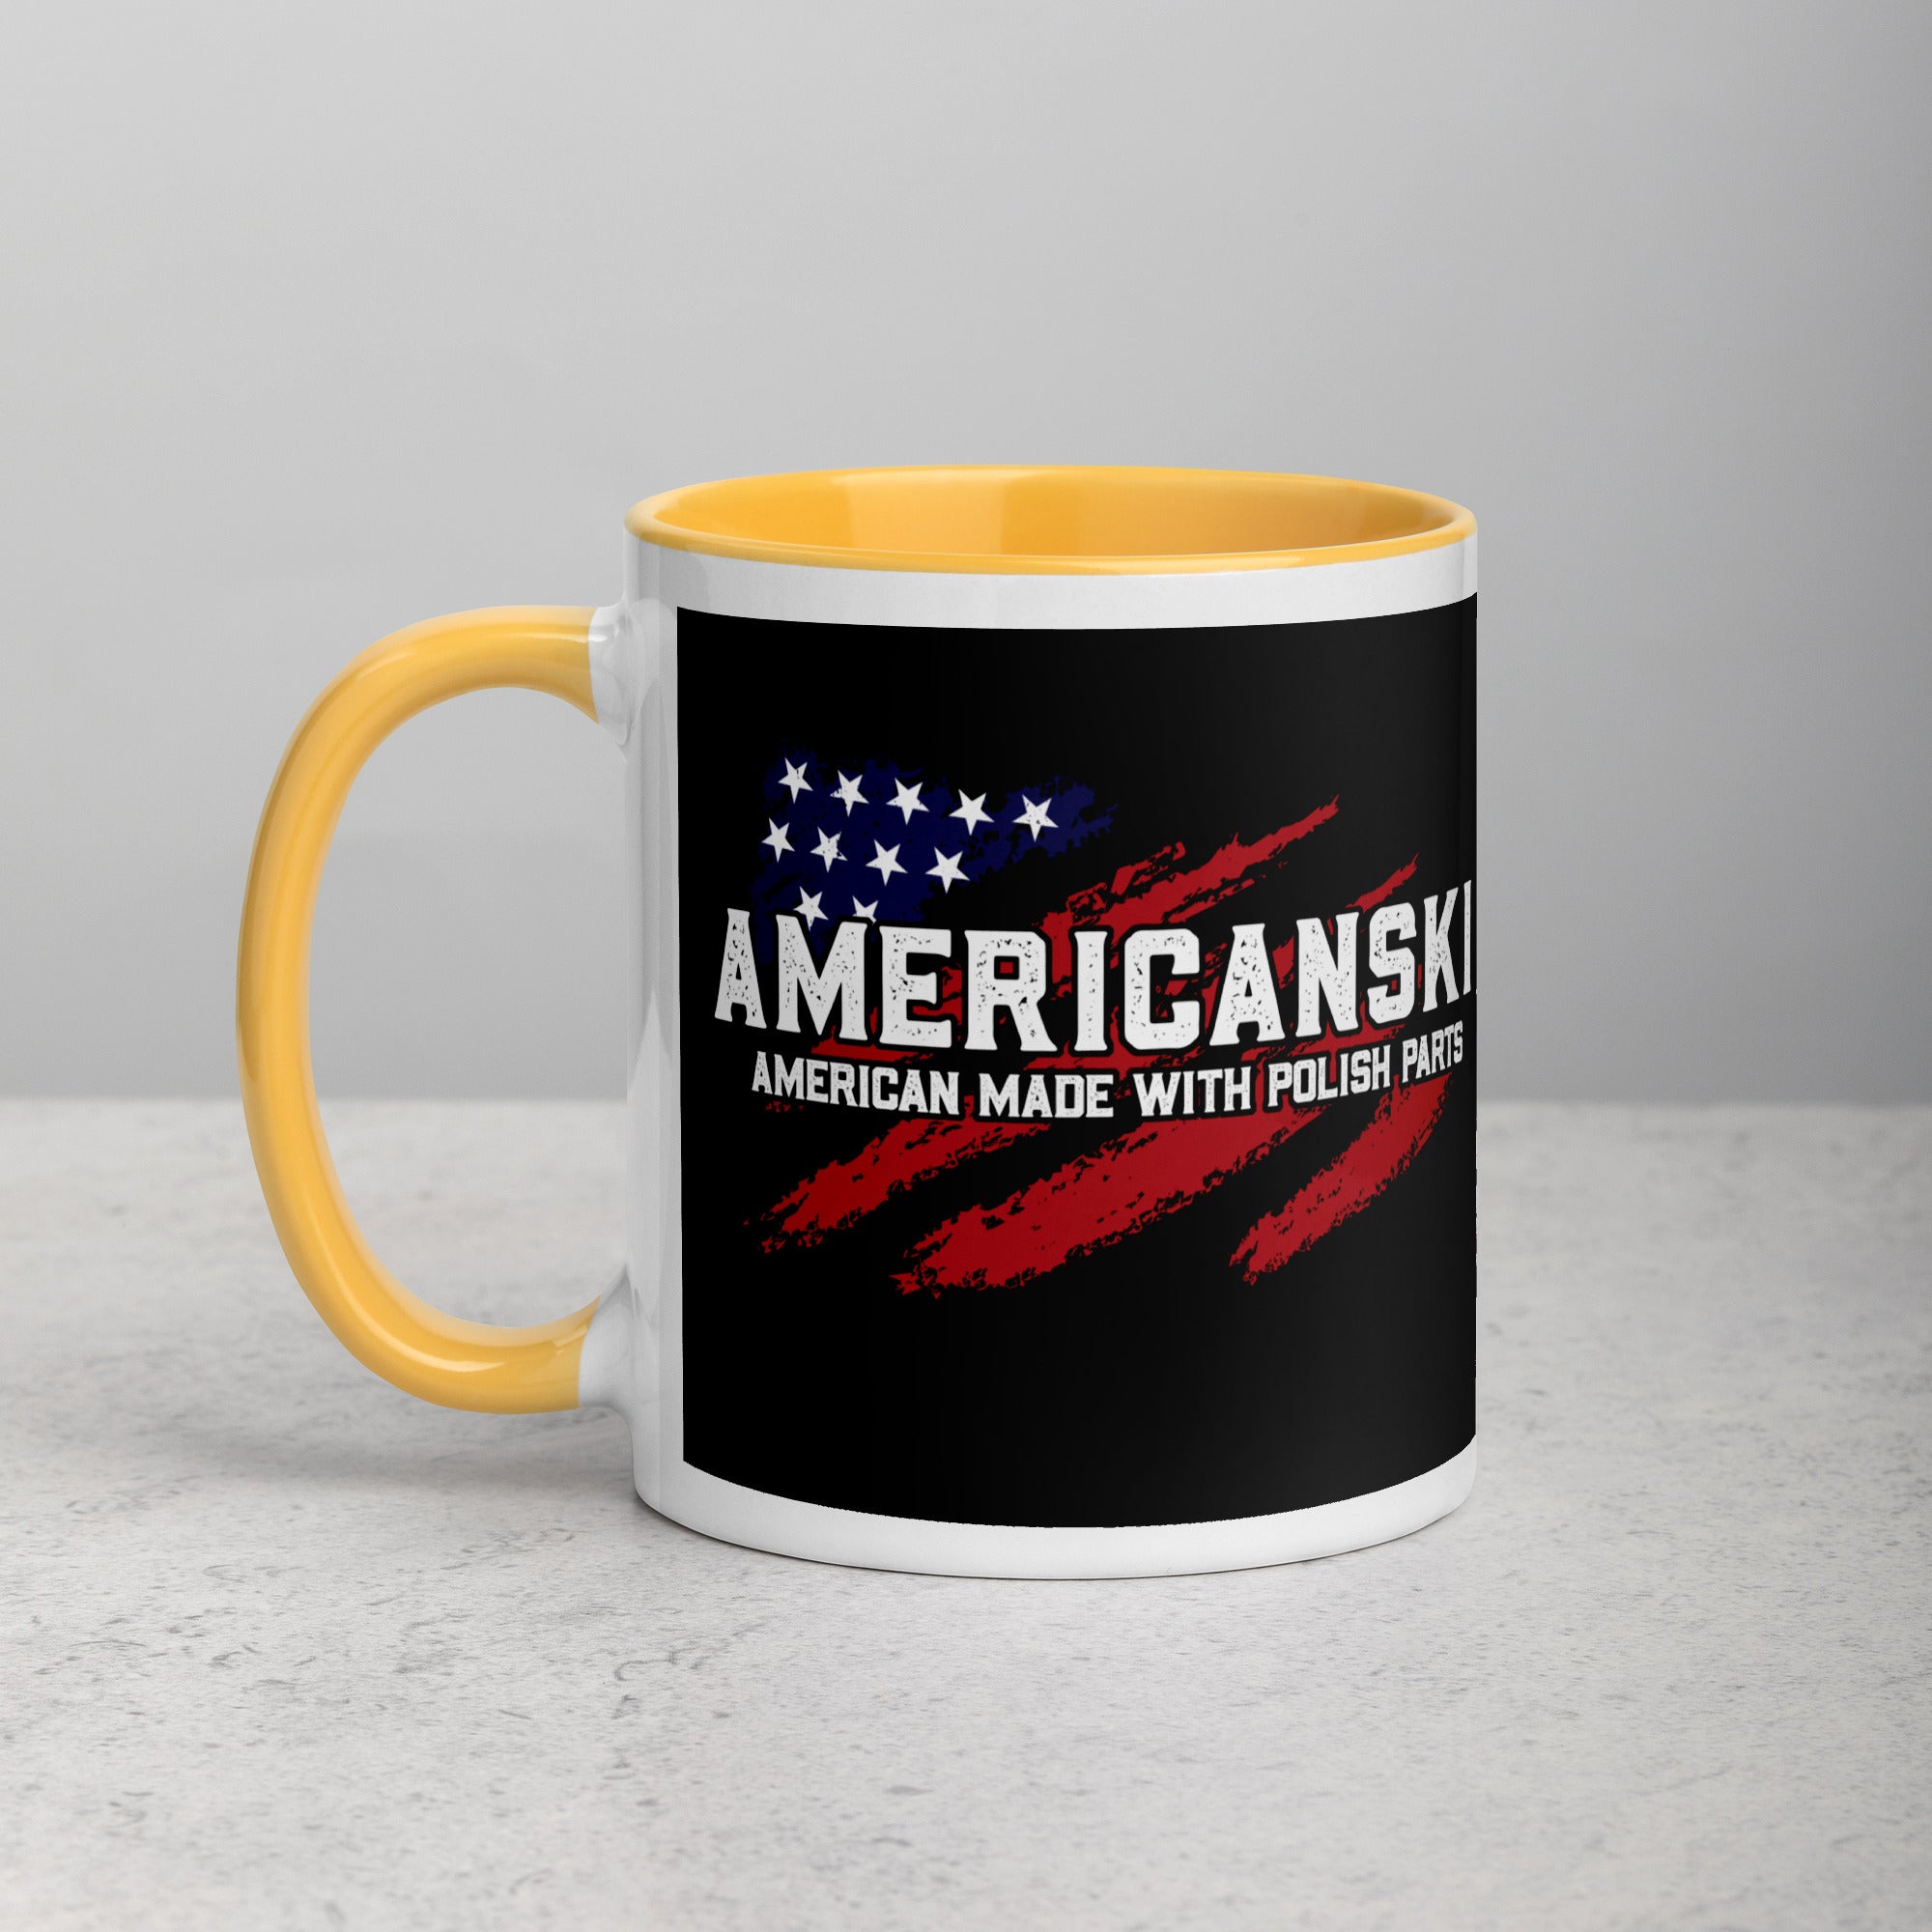 Americanski Coffee Mug with Color Inside  Polish Shirt Store Golden Yellow 11 oz 